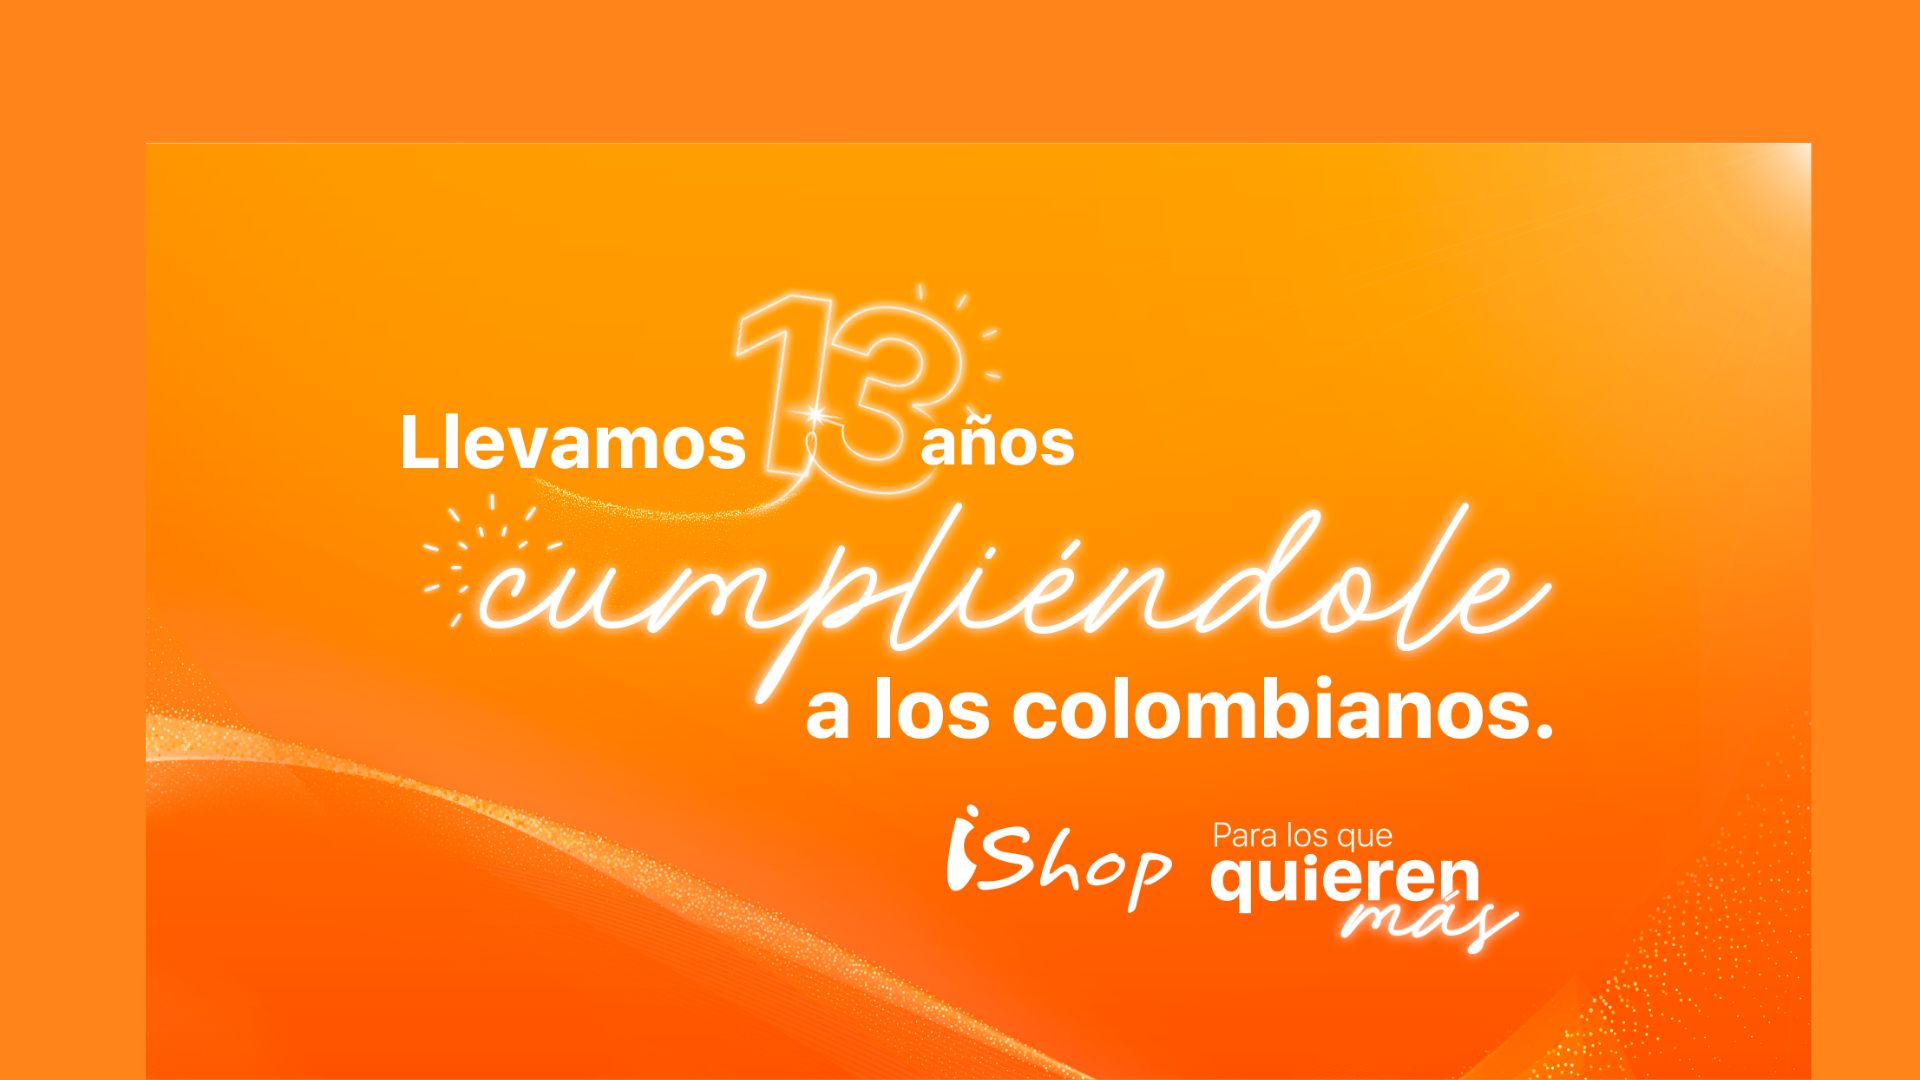 En iShop llevamos 13 años cumpliéndole a los colombianos.